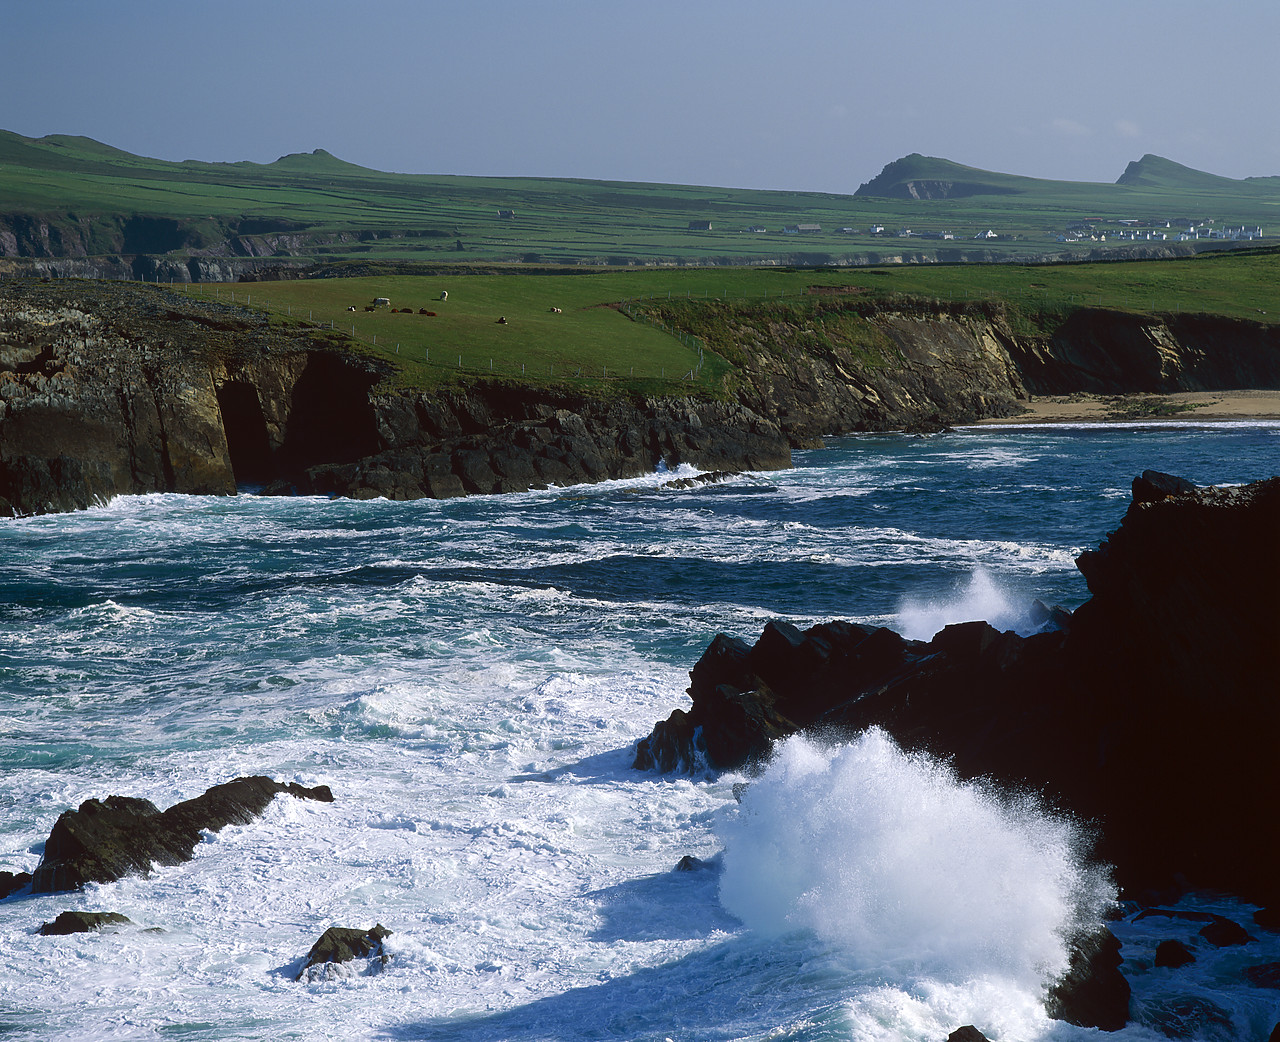 #990215-1 - Crashing Waves, Sybil Head, Dingle Peninsula, Ireland